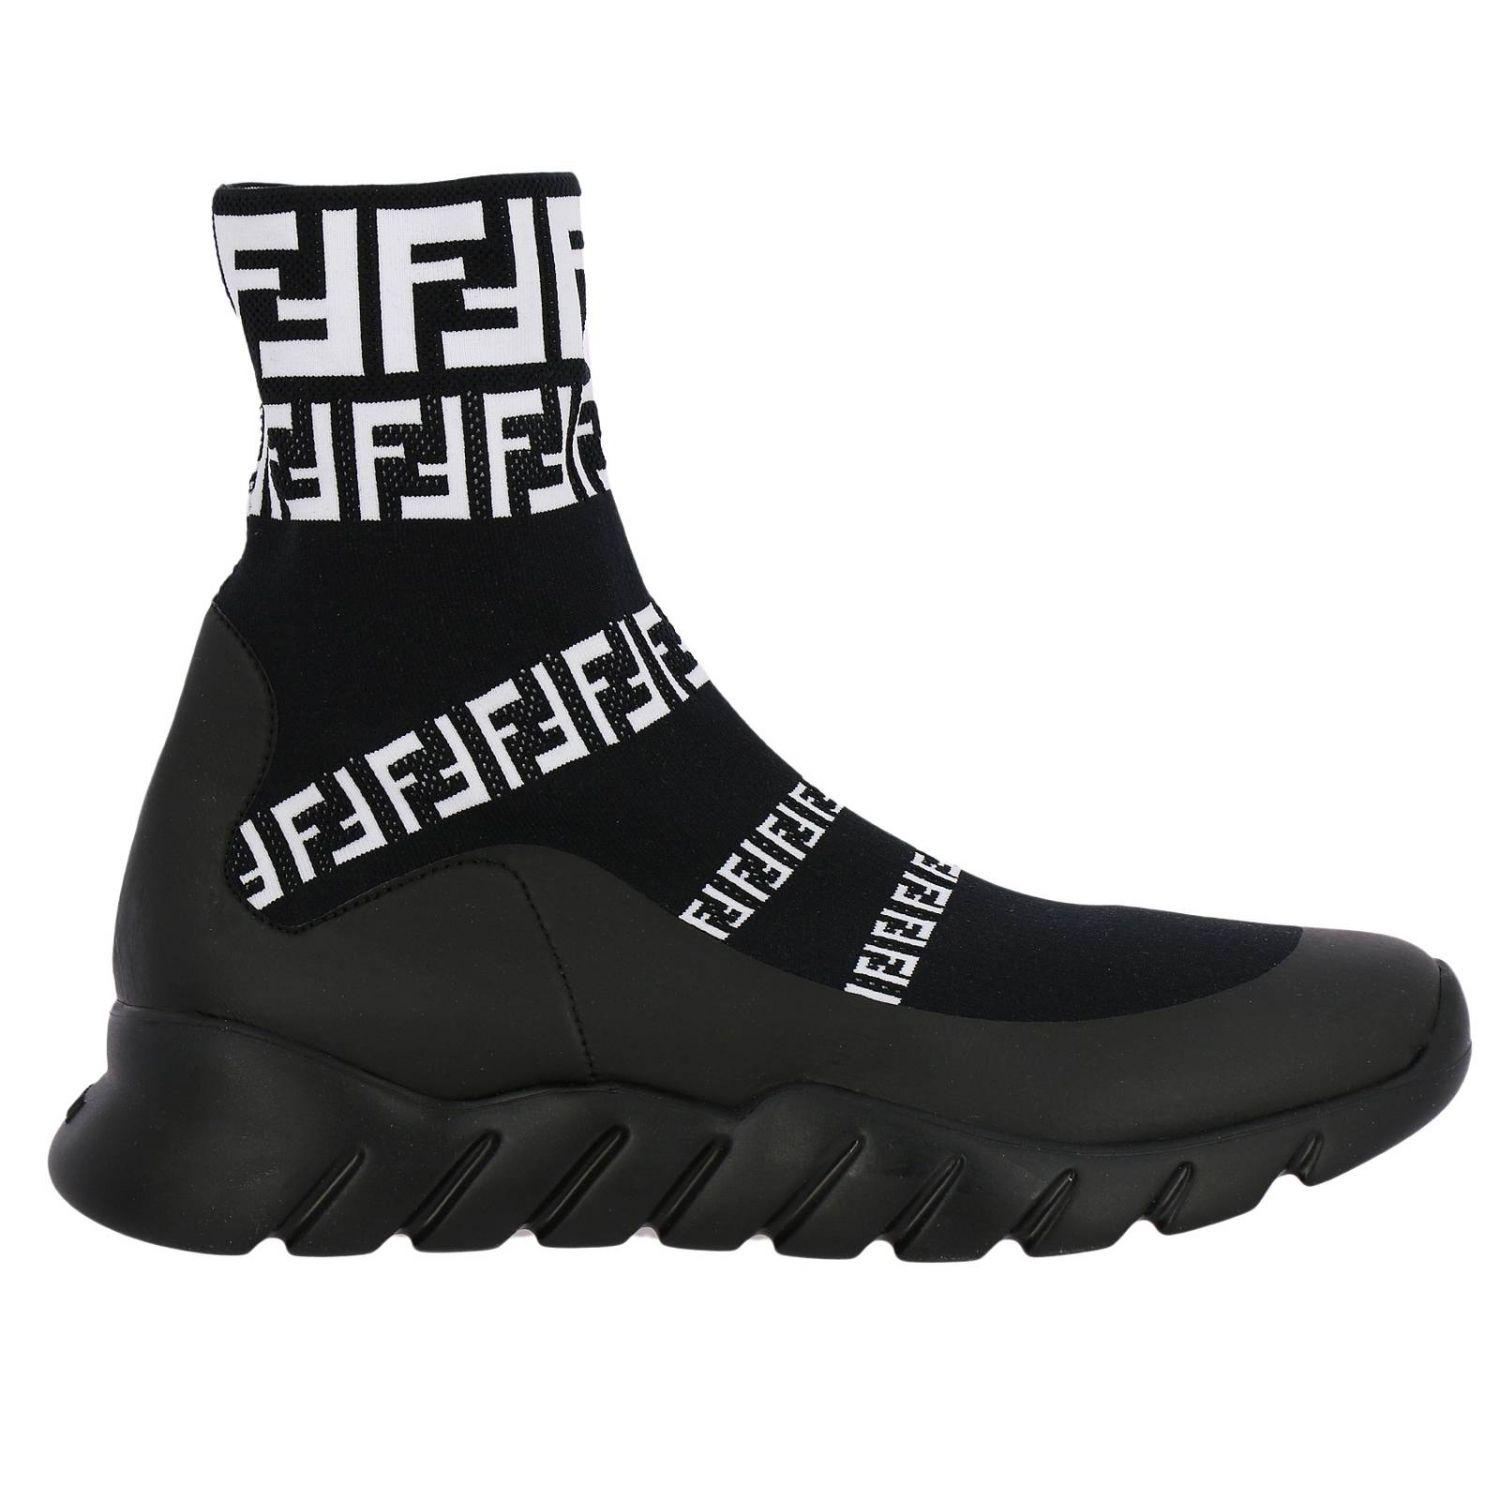 Fendi Synthetic Men's Sneakers in Black for Men - Lyst